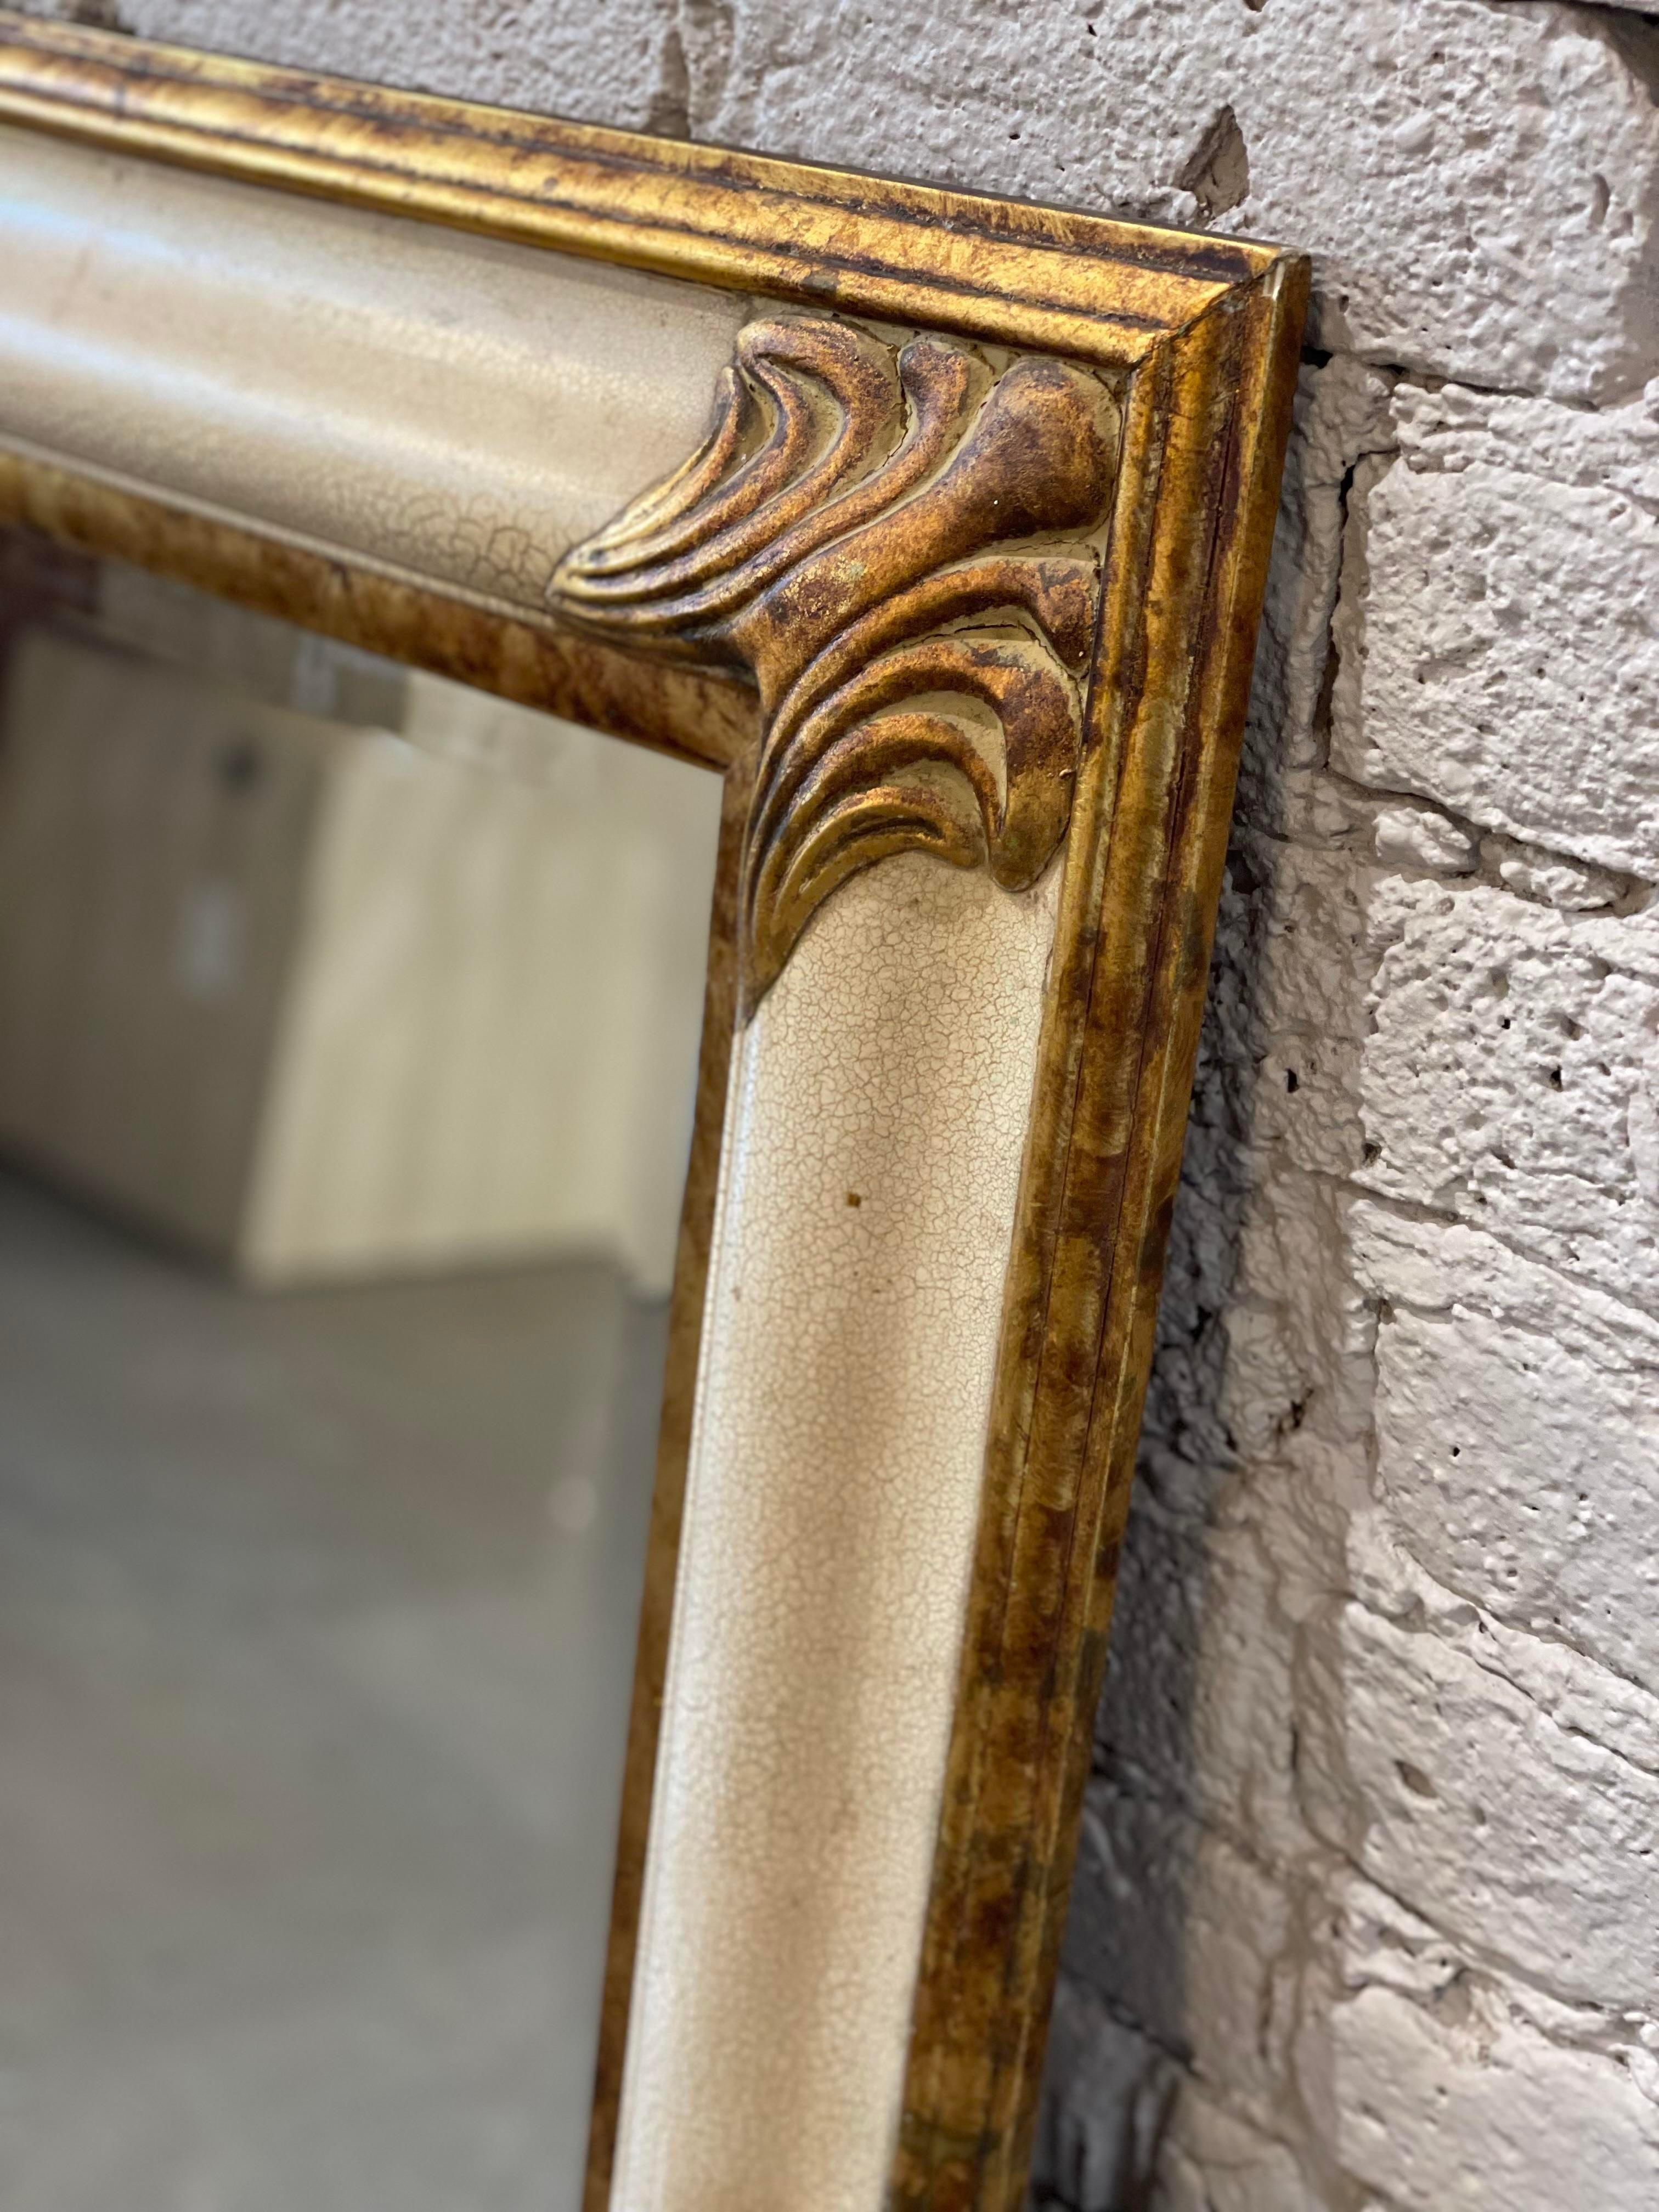 Magnifique miroir vintage avec des détails dorés et une finition de peinture crémeuse au lait craquelé. Peut être orienté verticalement ou horizontalement.
